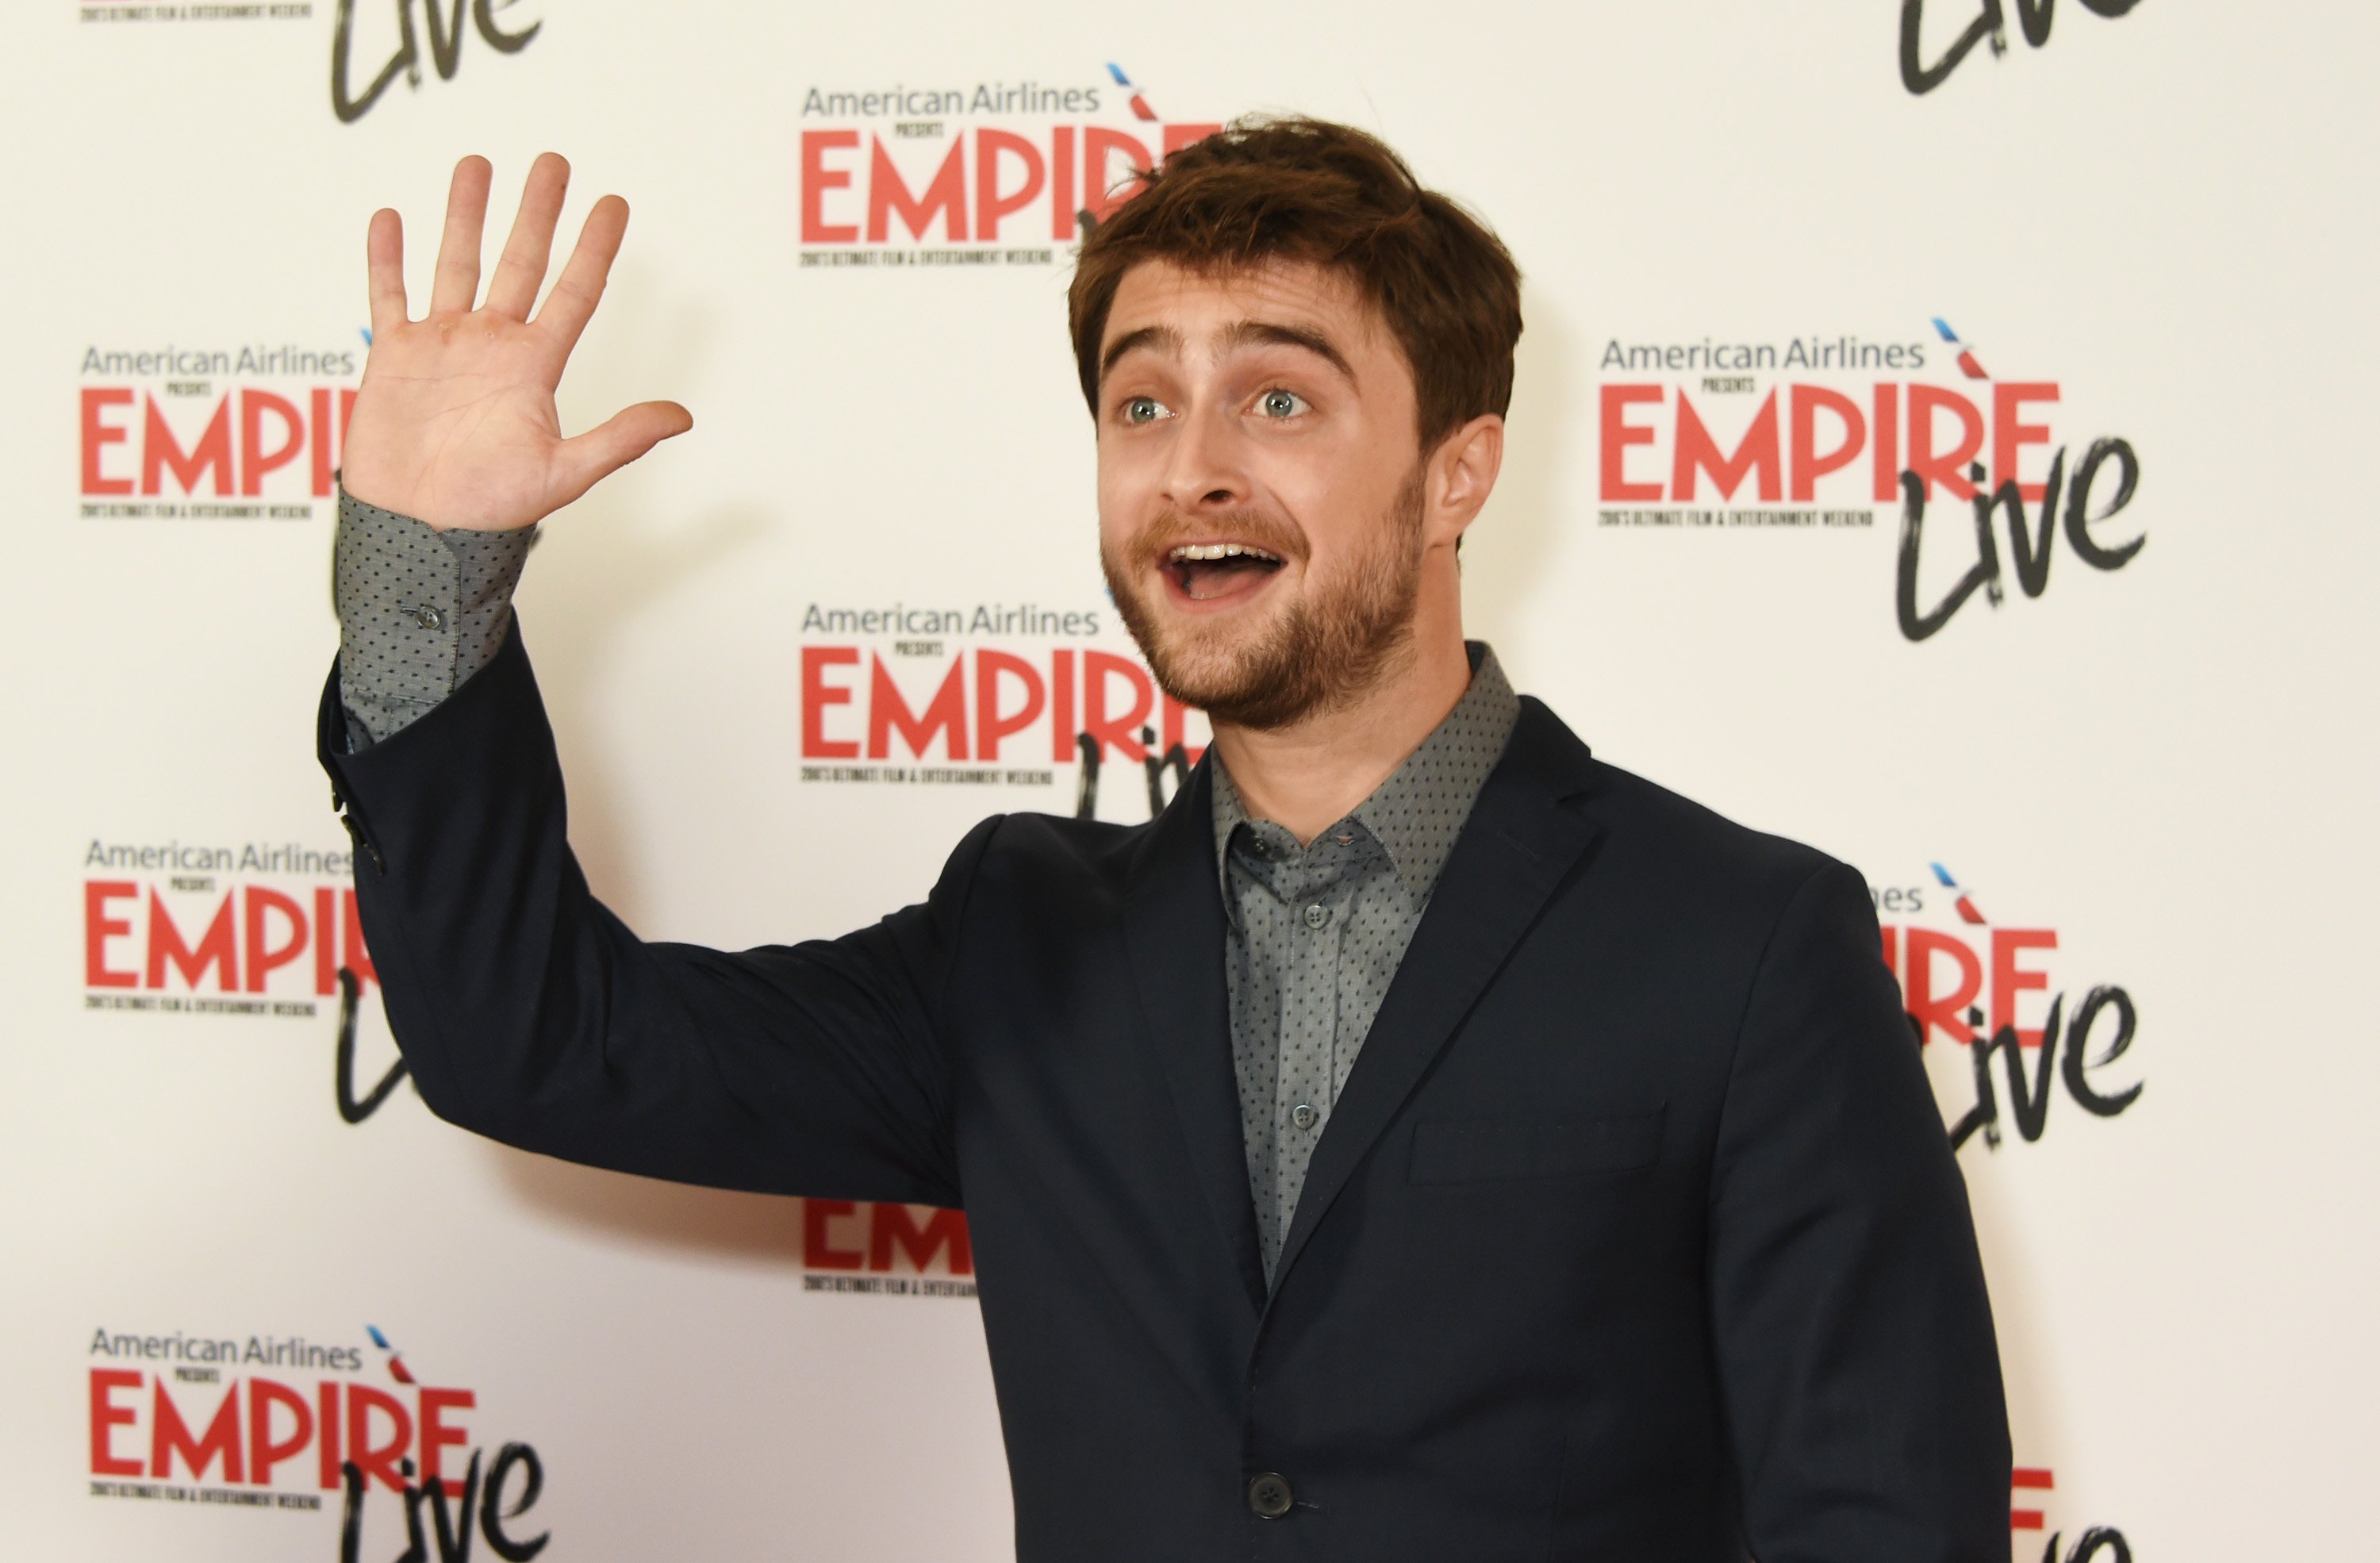 Empire Live'da Daniel Radcliffe: "İsviçre Ordusu Adamı" & "imparatorluk" 23 Eylül 2016'da Londra, İngiltere'de çifte fatura gala gösterimi.  |  Kaynak: Getty Images